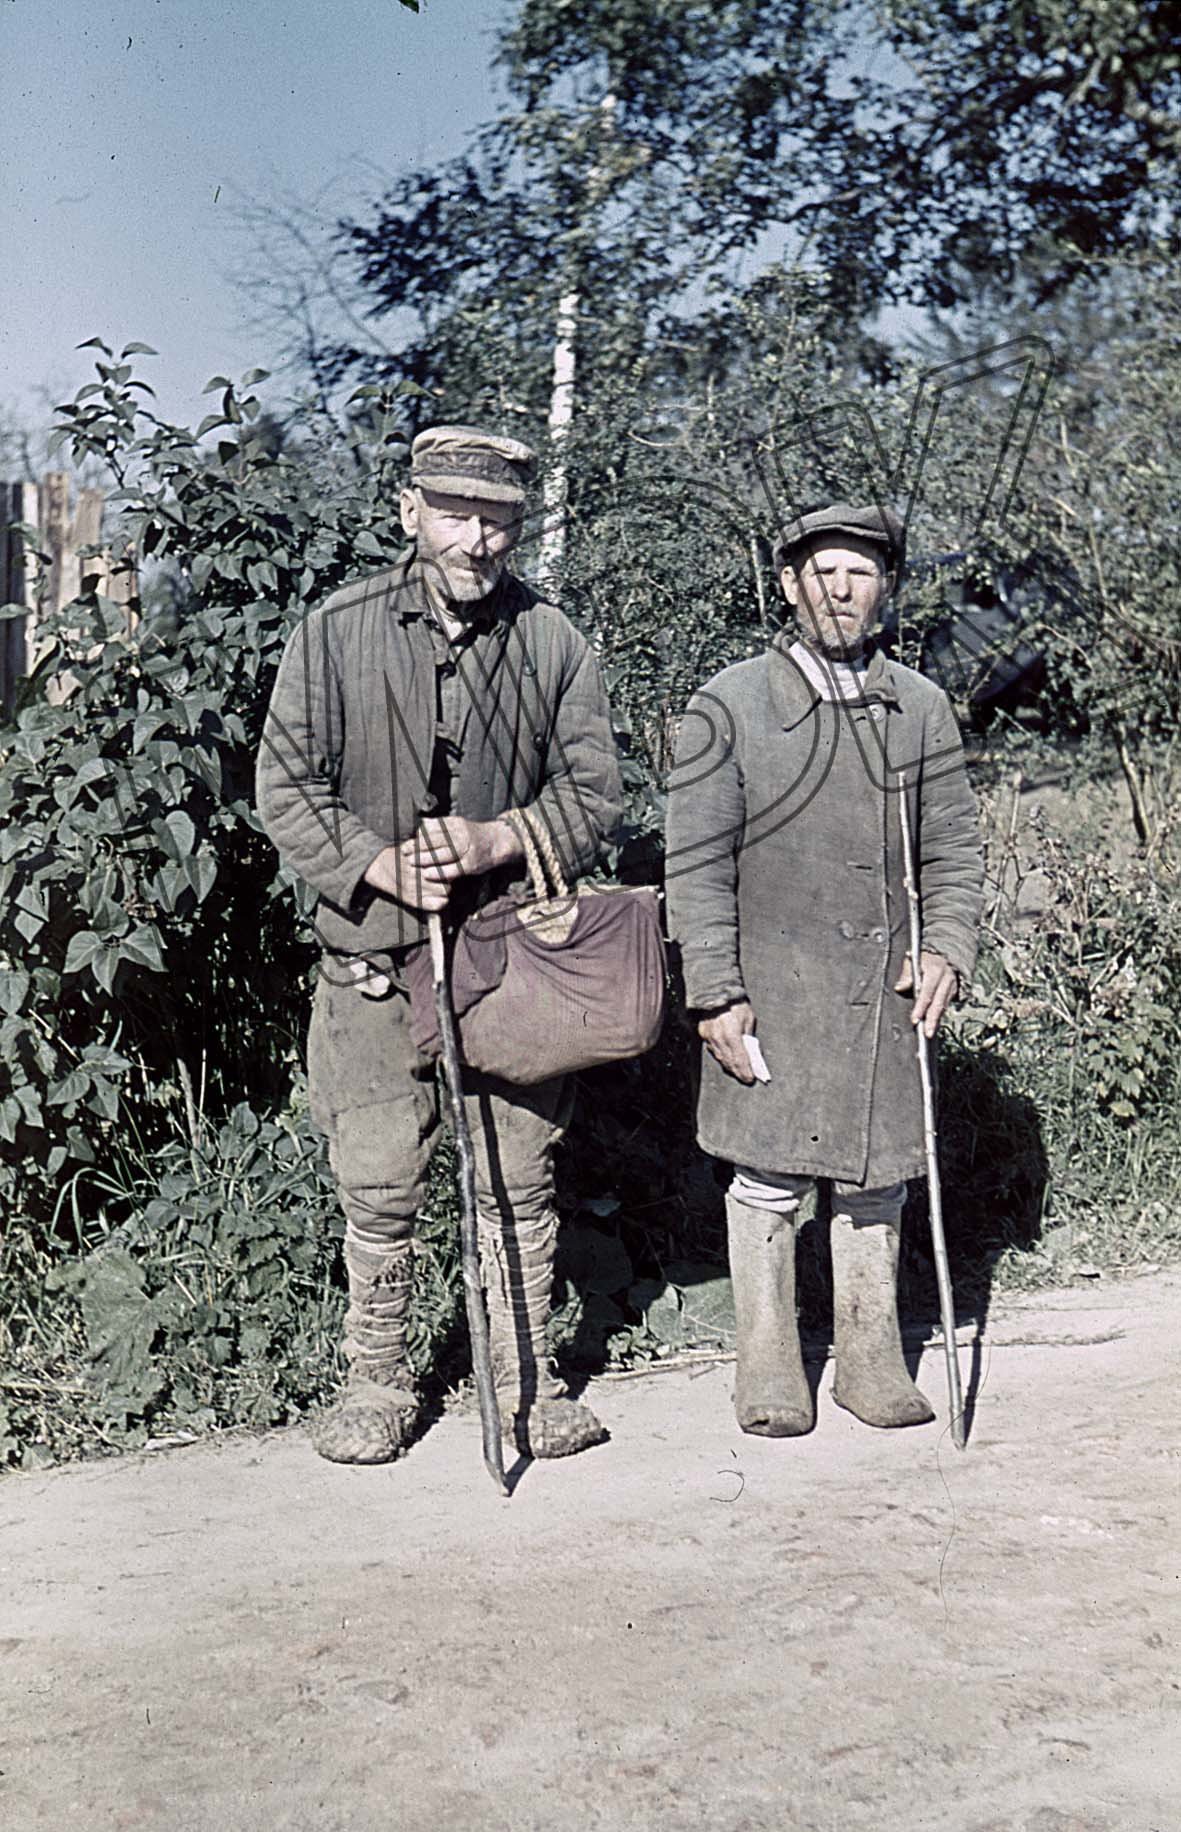 Fotografie: Zwei ältere Männer bei Prudki, September 1941 (Museum Berlin-Karlshorst RR-P)